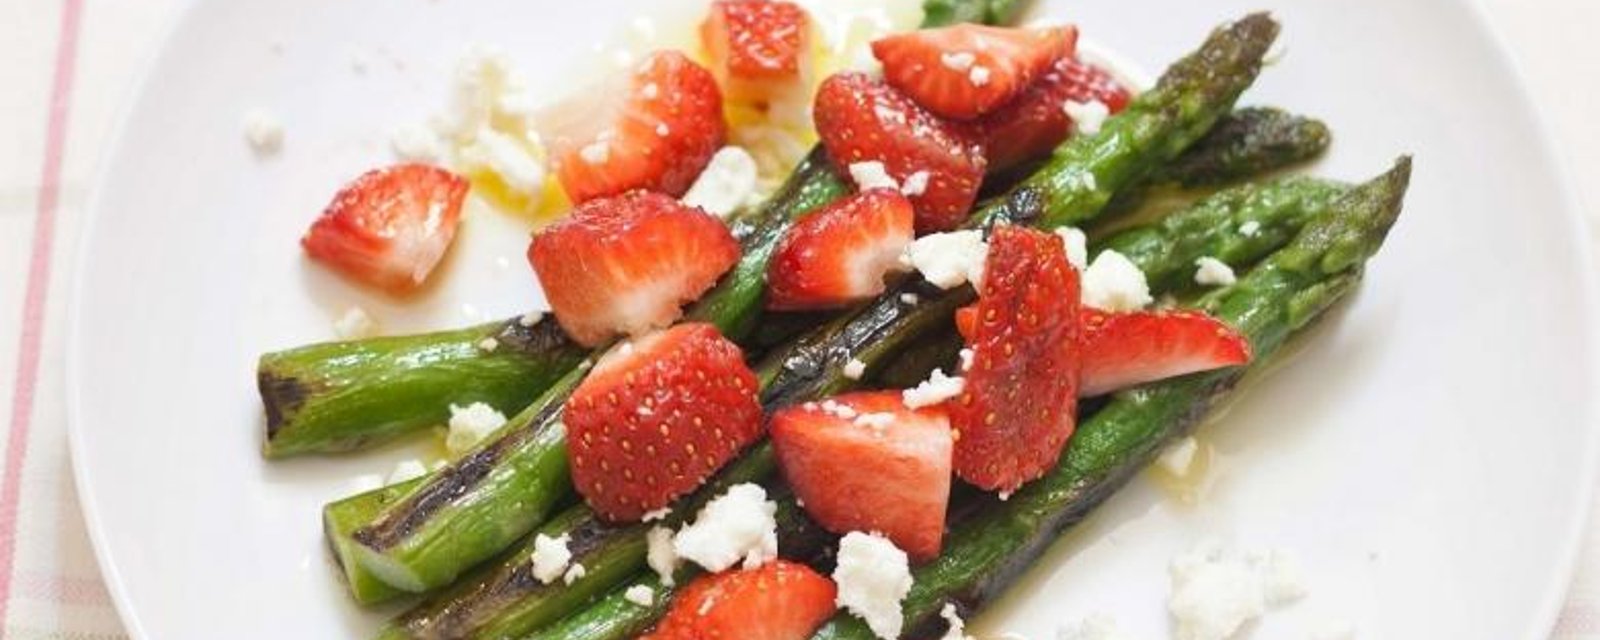 L'exemple parfait de la simplicité...La salade d'asperges et fraises